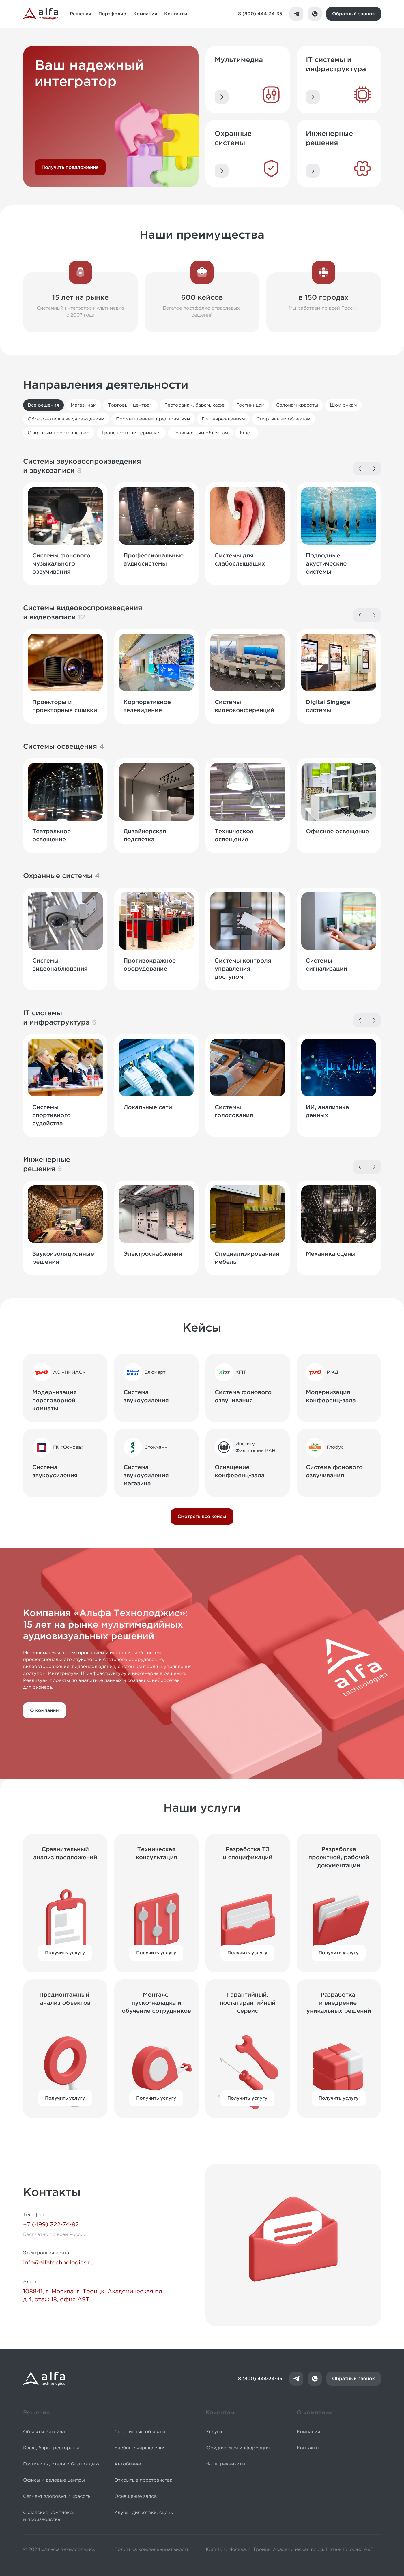 Дизайн сайта компании Альфа Технолоджис на платформе apps.zaurisakov.com